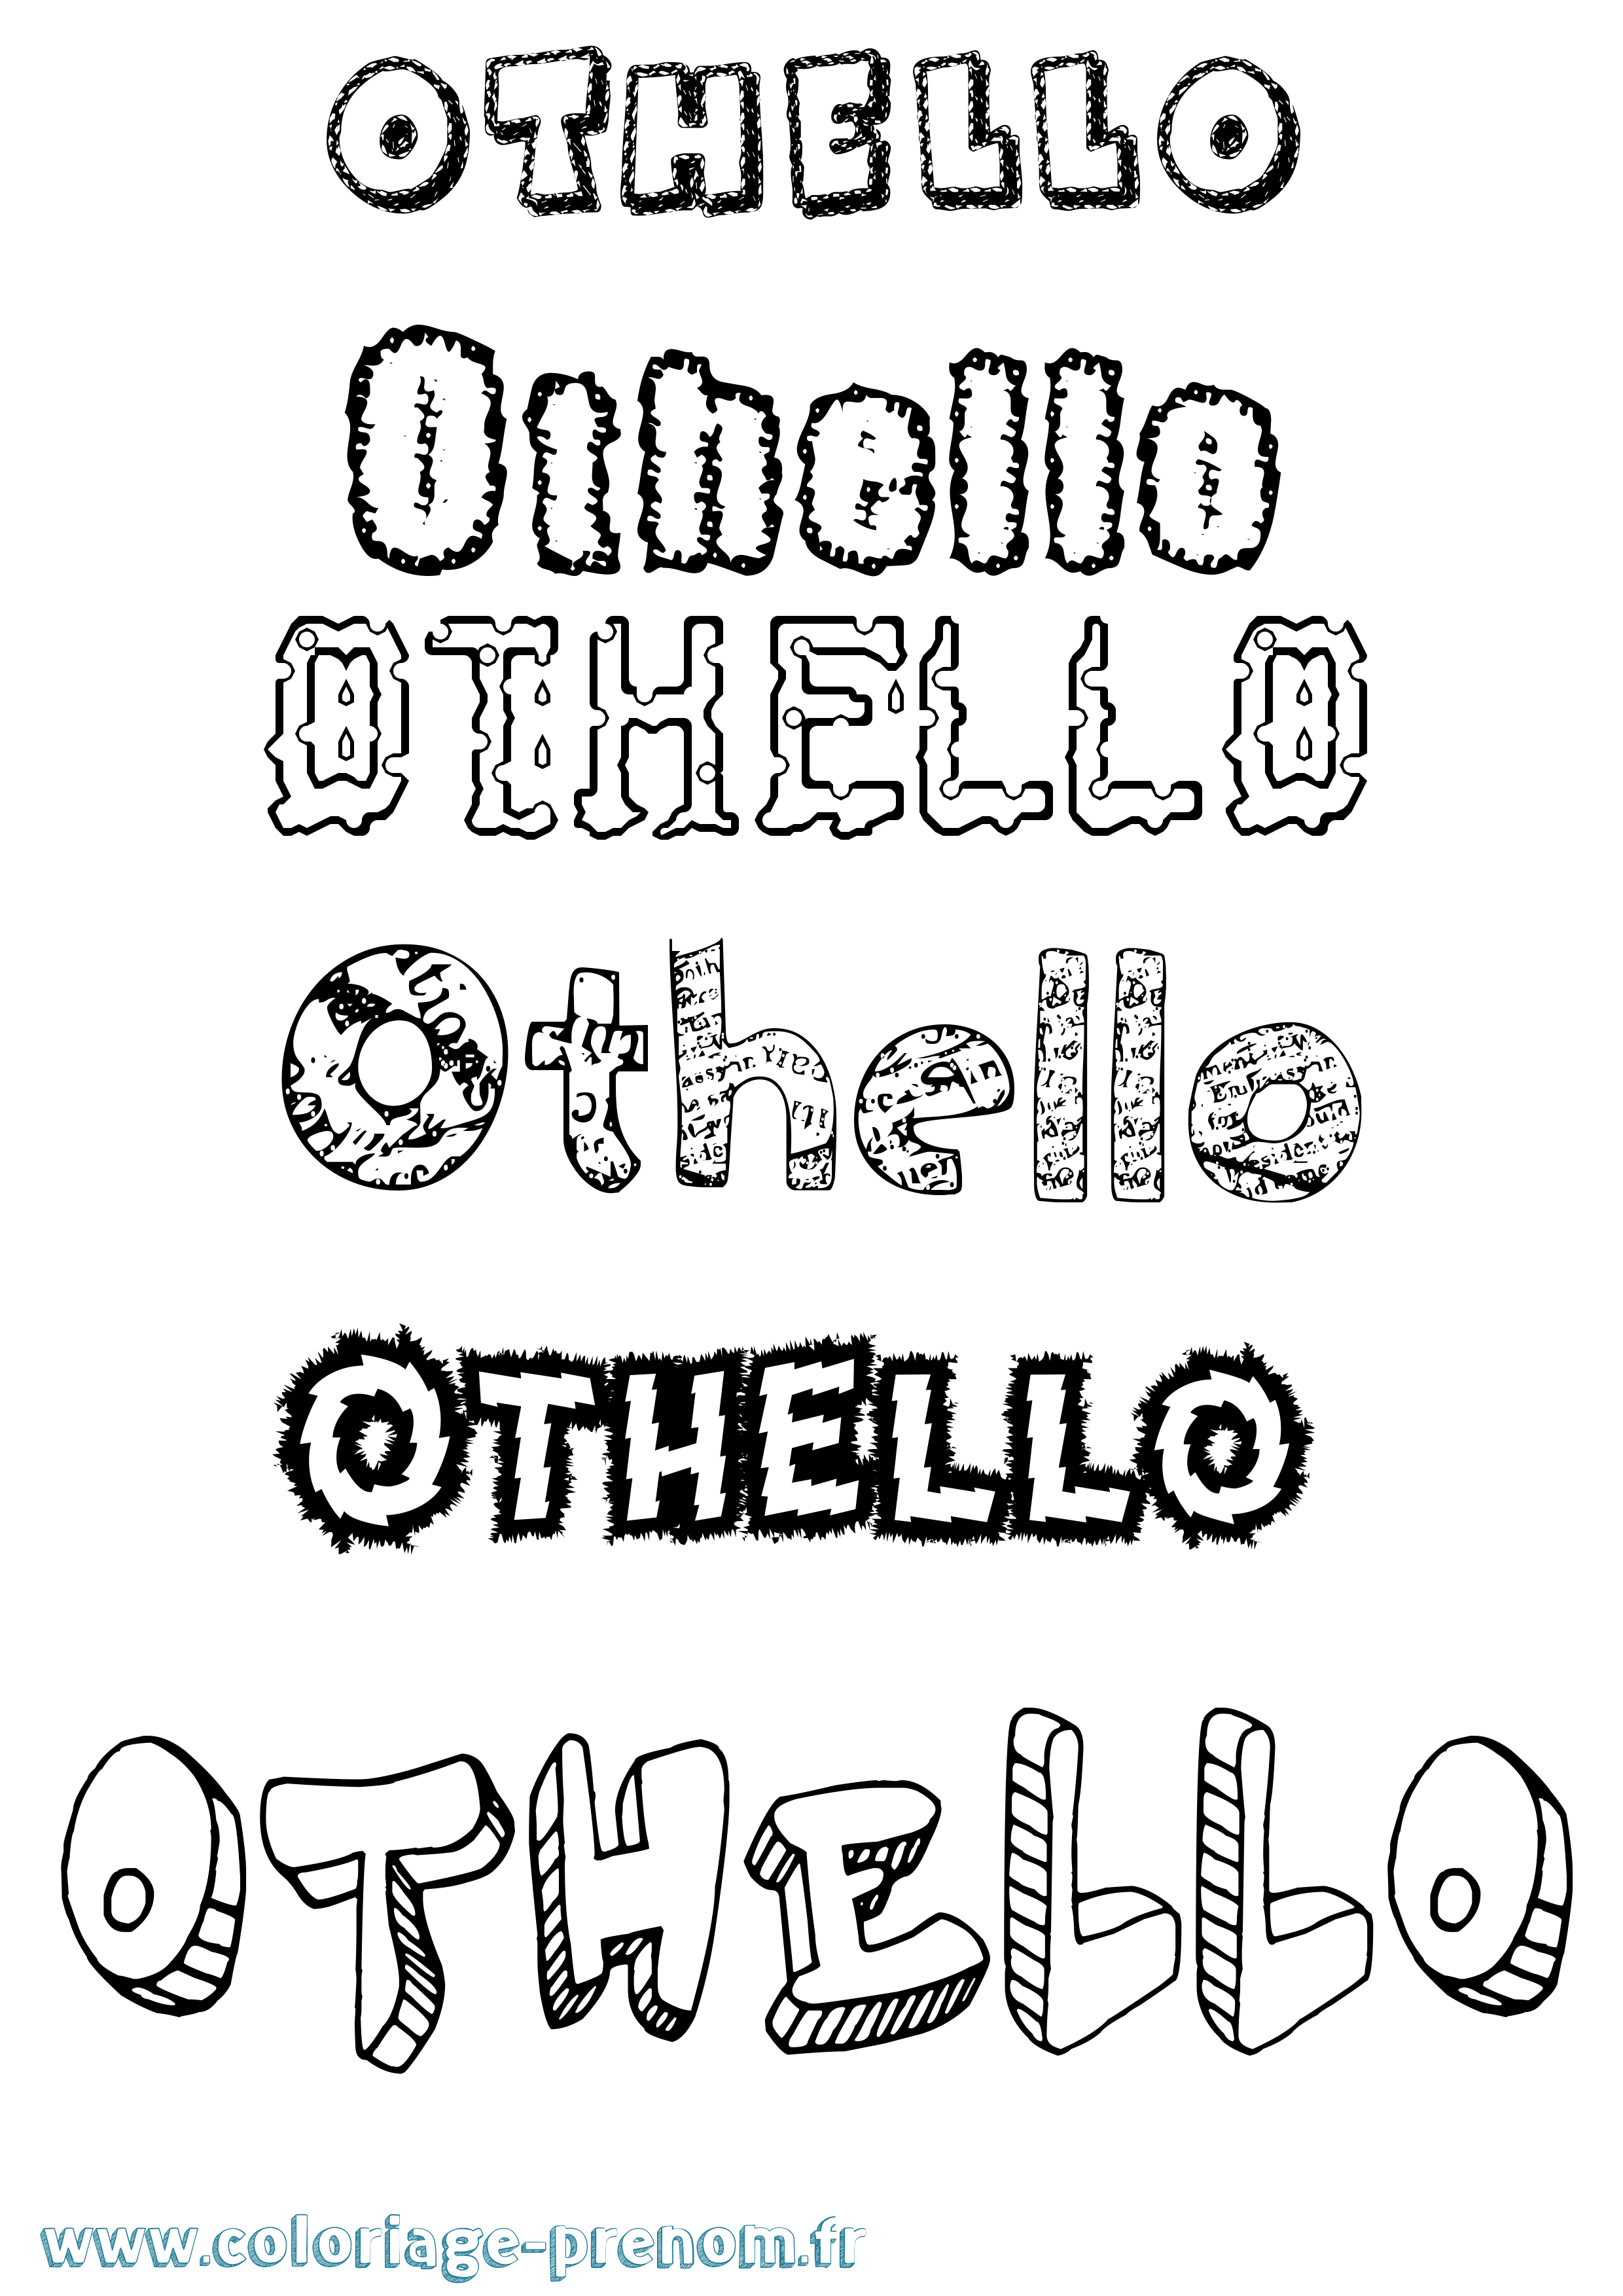 Coloriage prénom Othello Destructuré